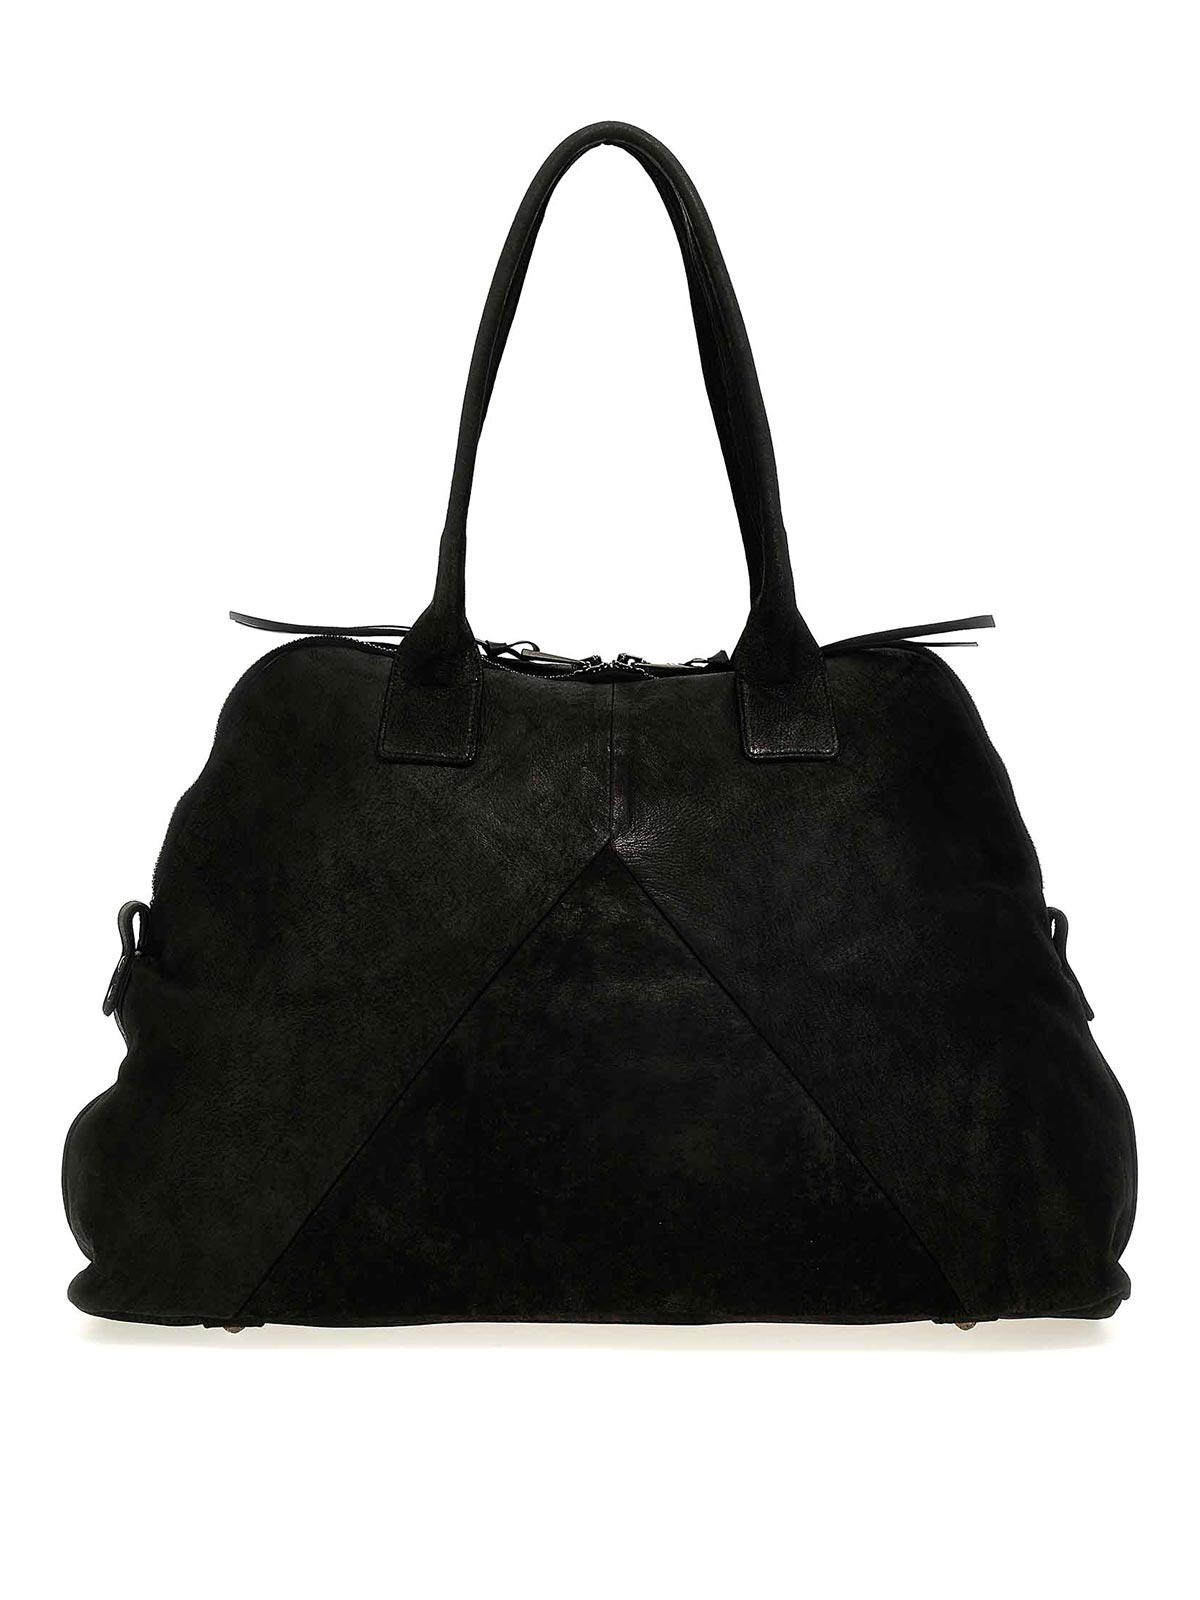 Giorgio Brato Leather Travel Bag In Black